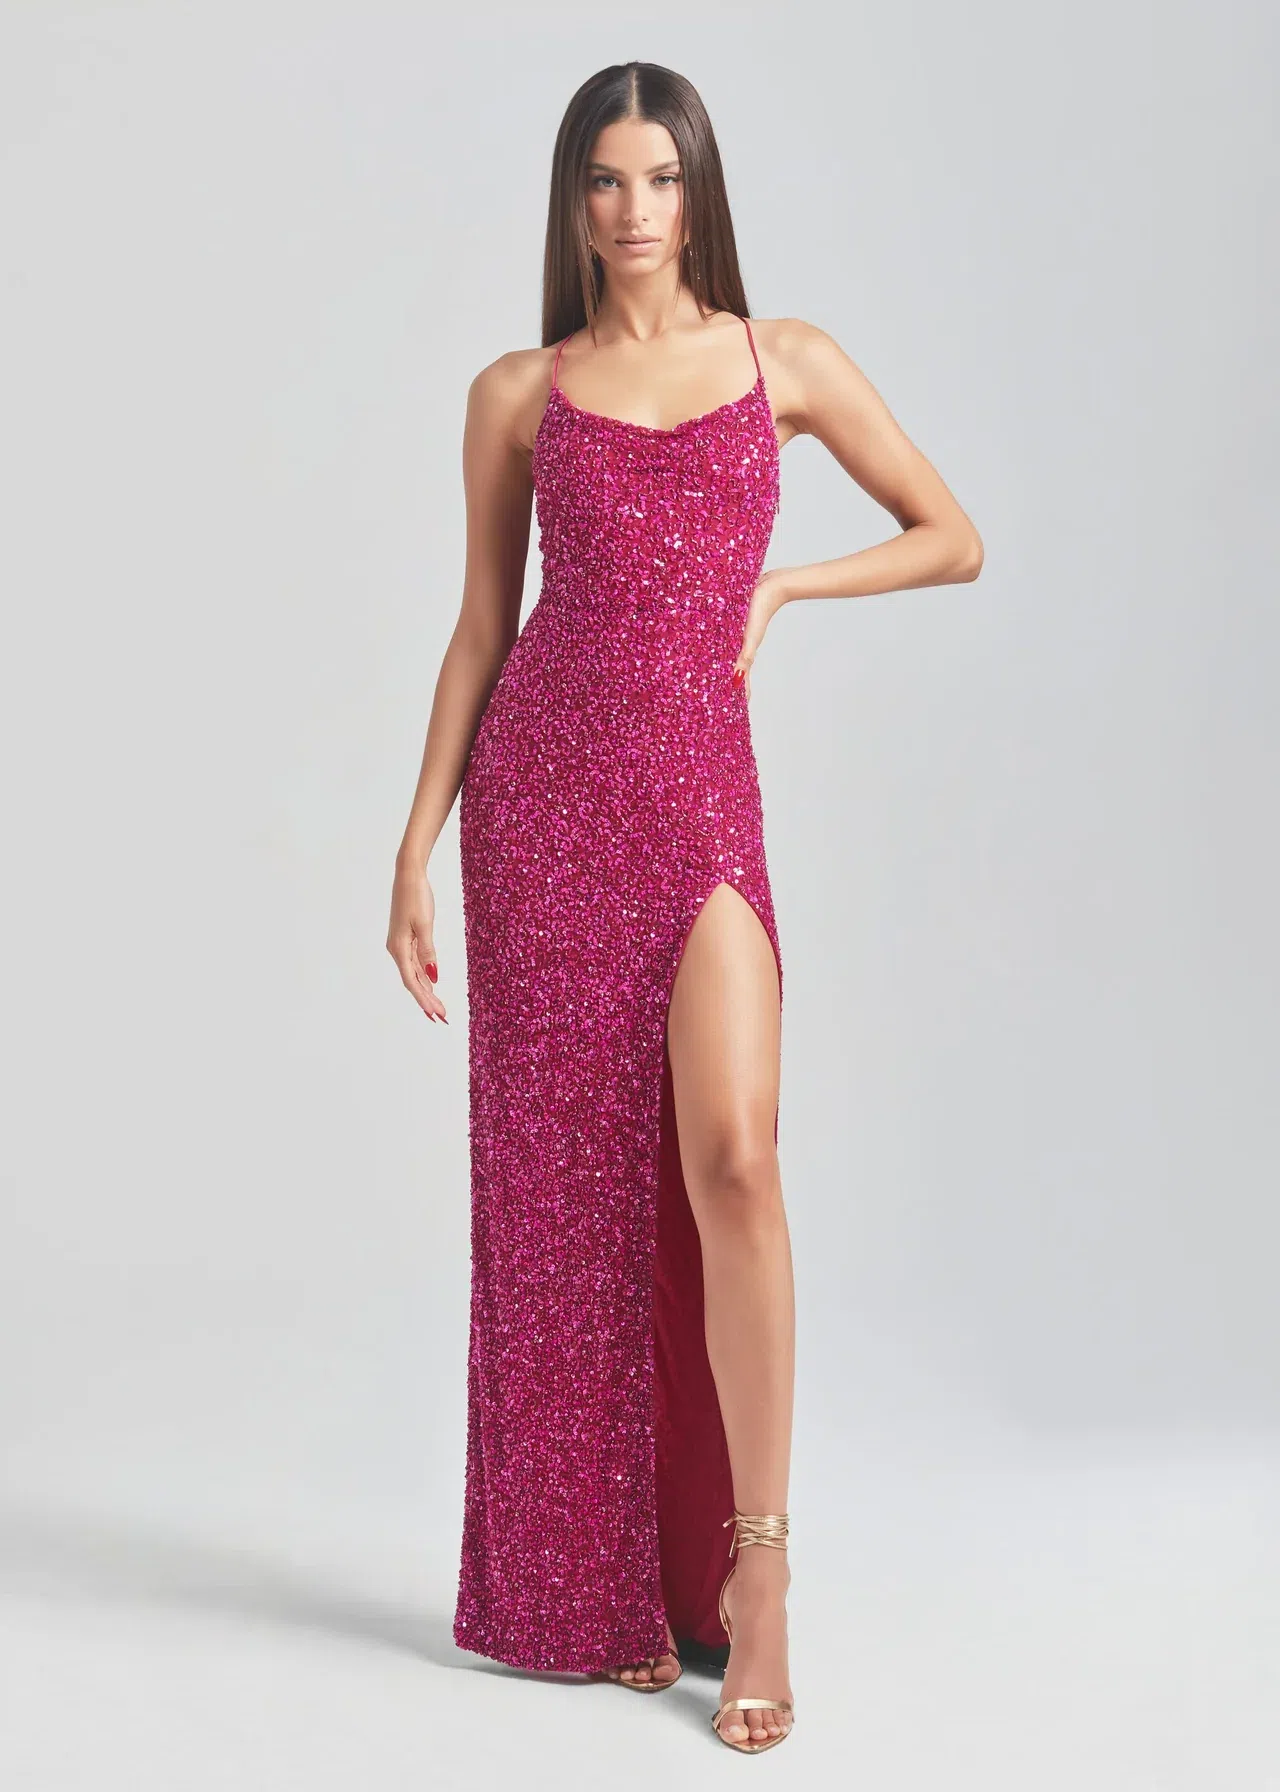 Retrofete Blair Sequin Dress Pink Size 6 | The Volte